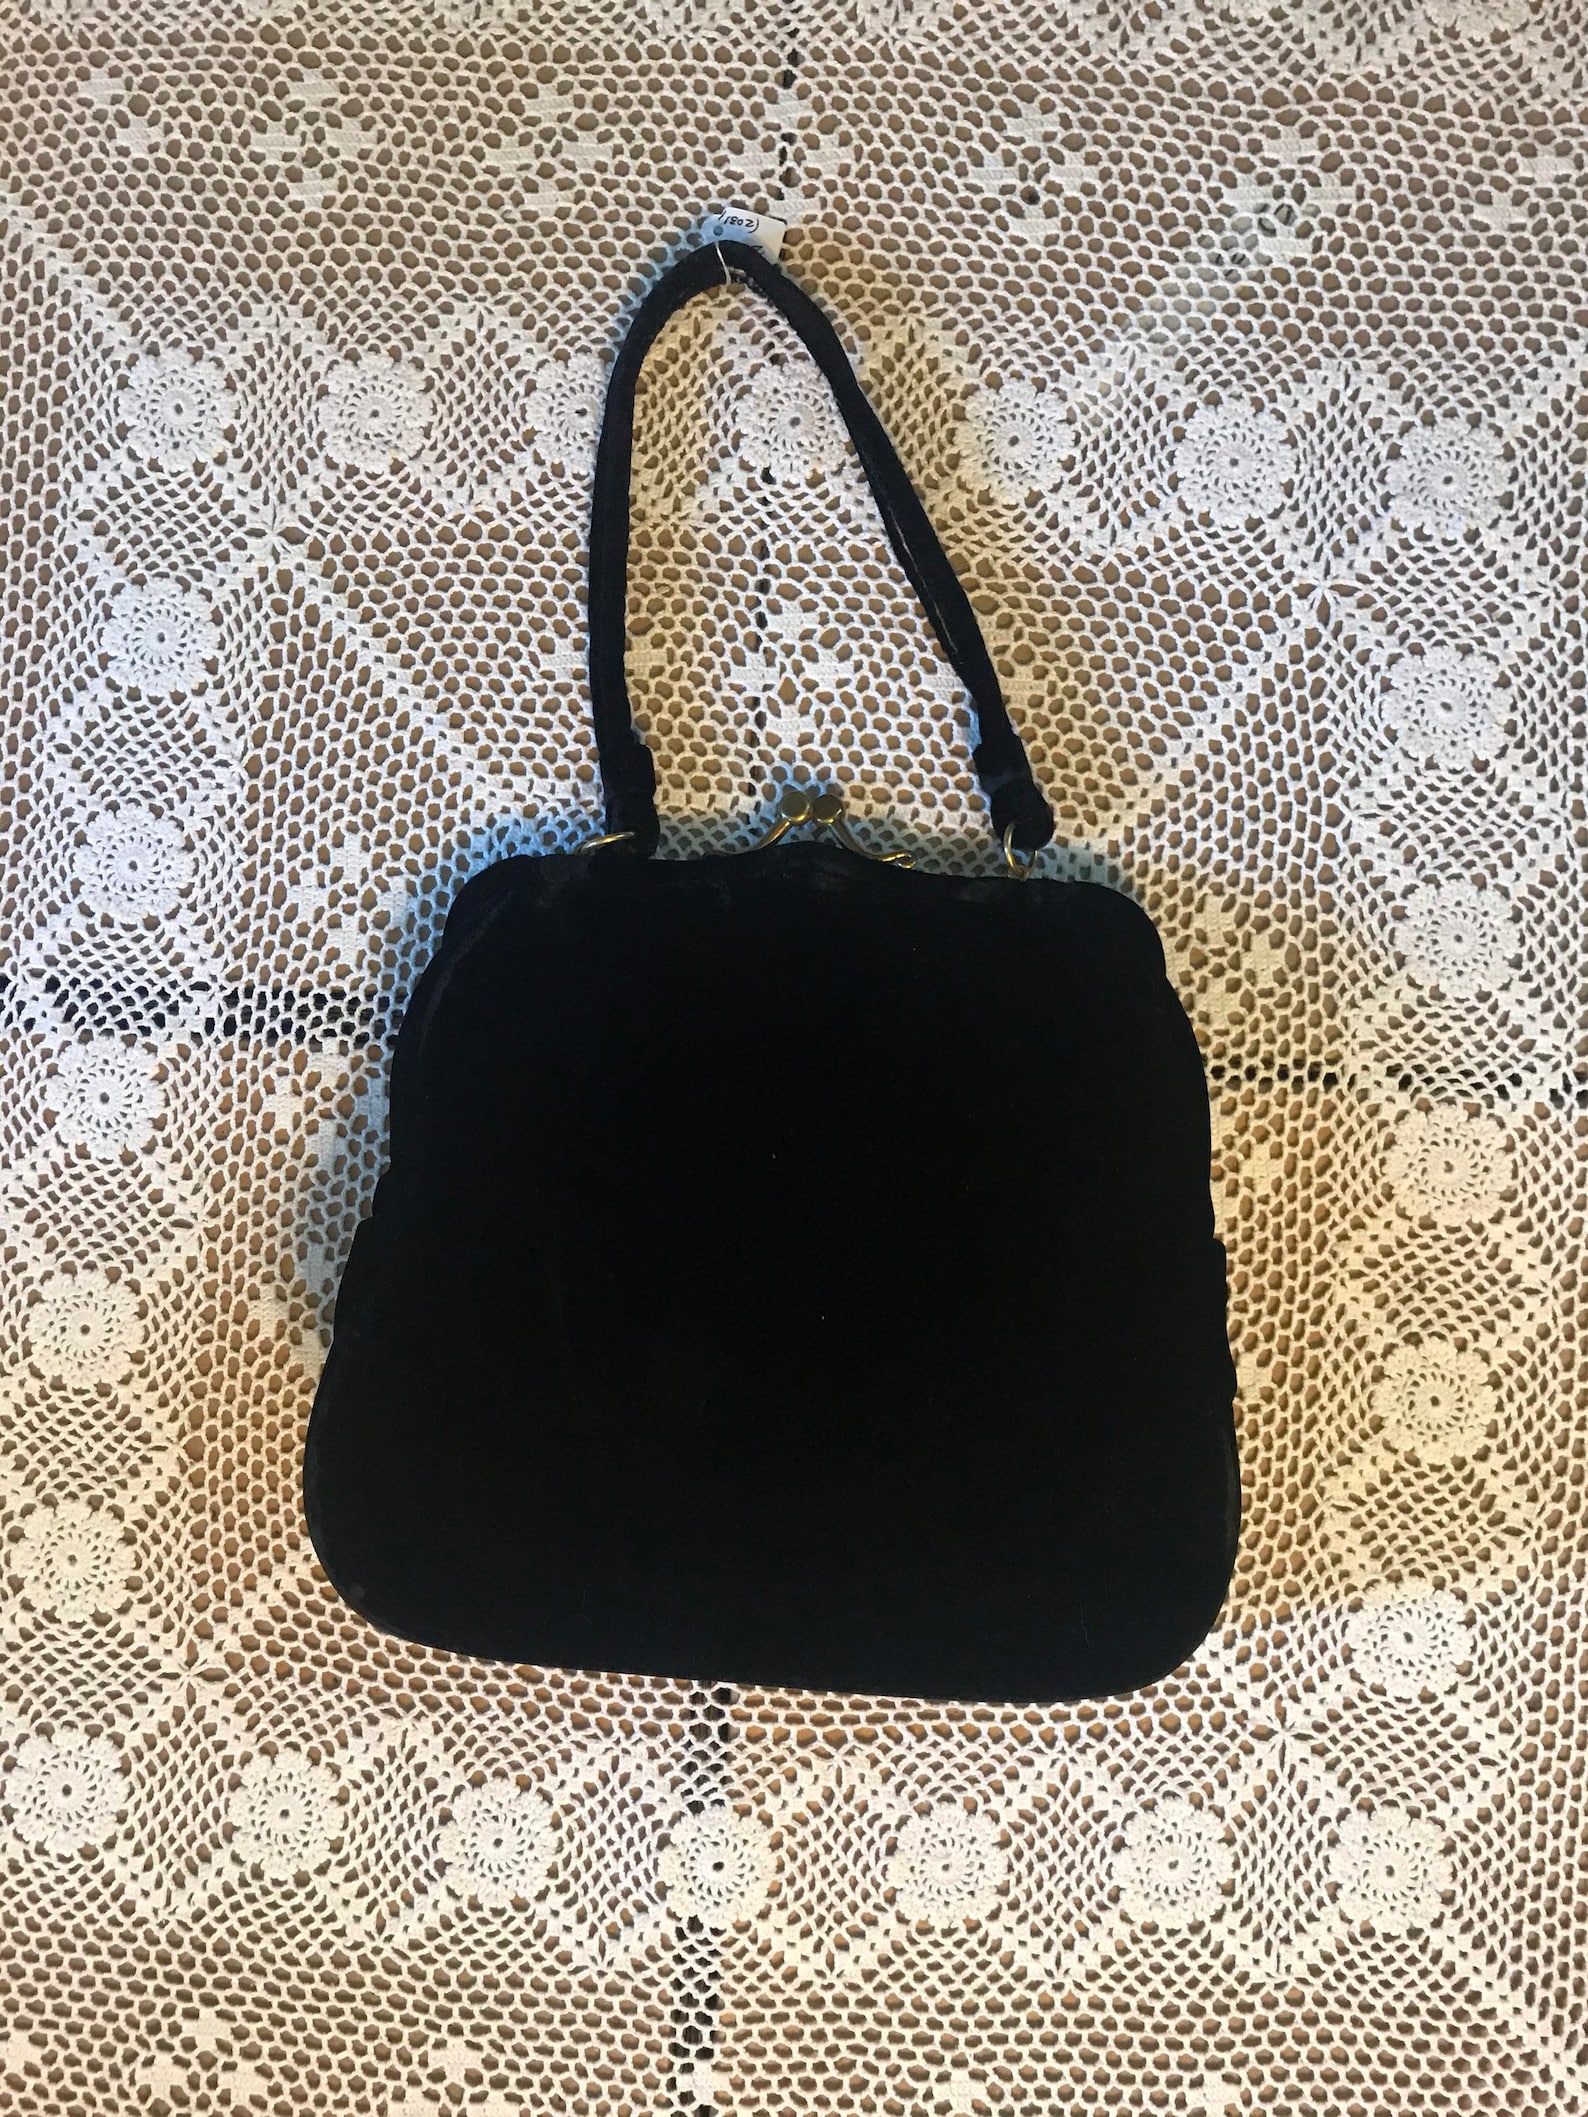 Vintage Ingber Velvet Purse Black Velvet Handbag | Etsy